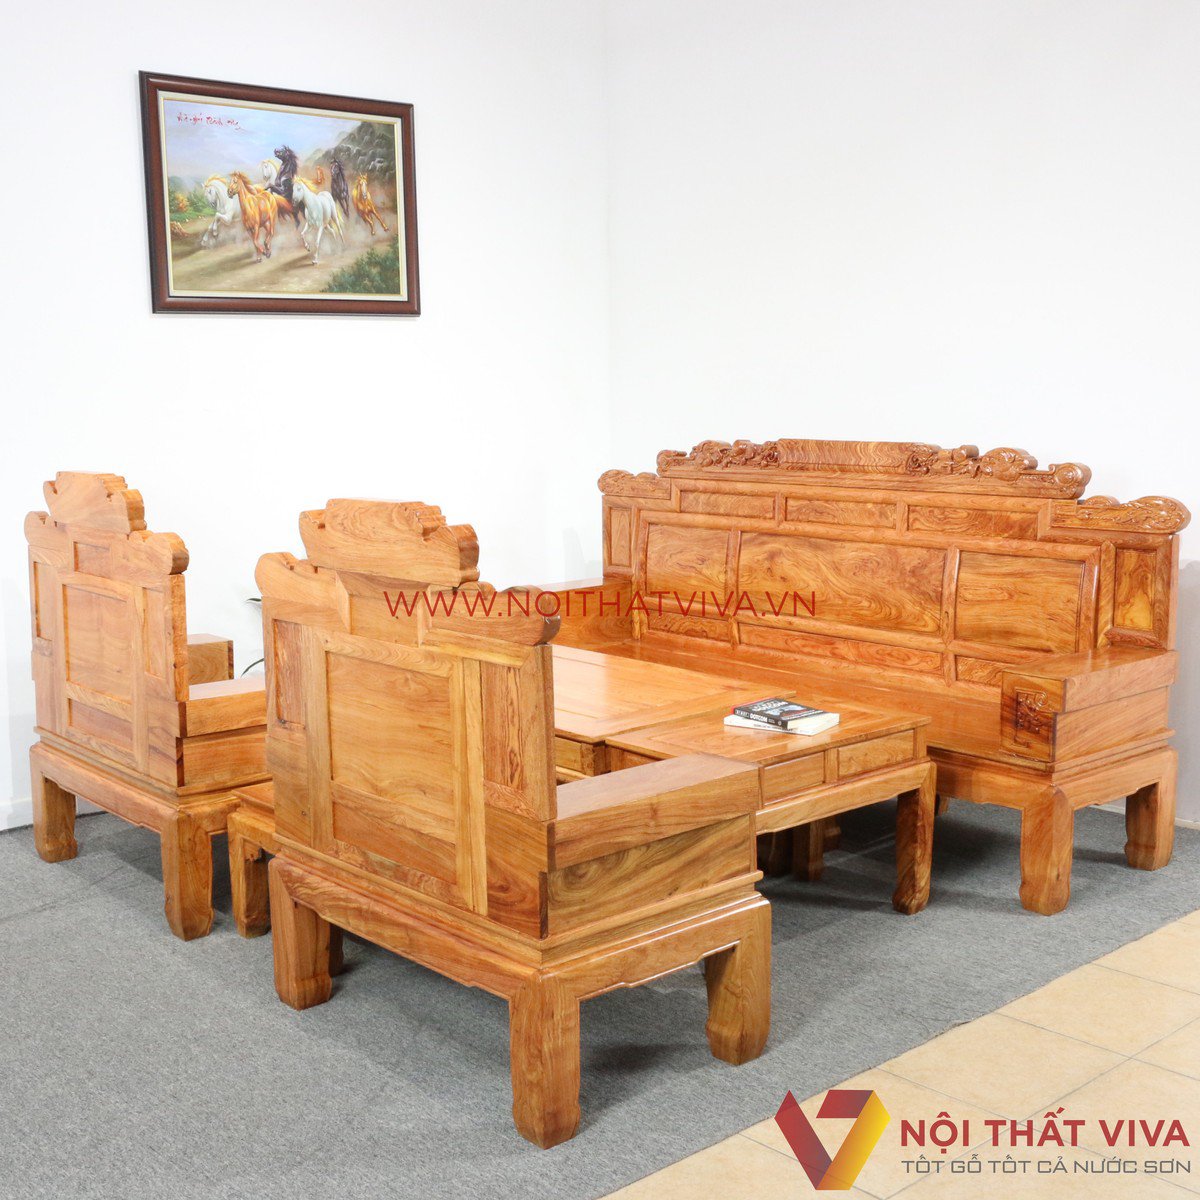 Xu hướng lựa chọn bàn ghế phòng khách gỗ hương đá được ưa chuộng nhất hiện nay 